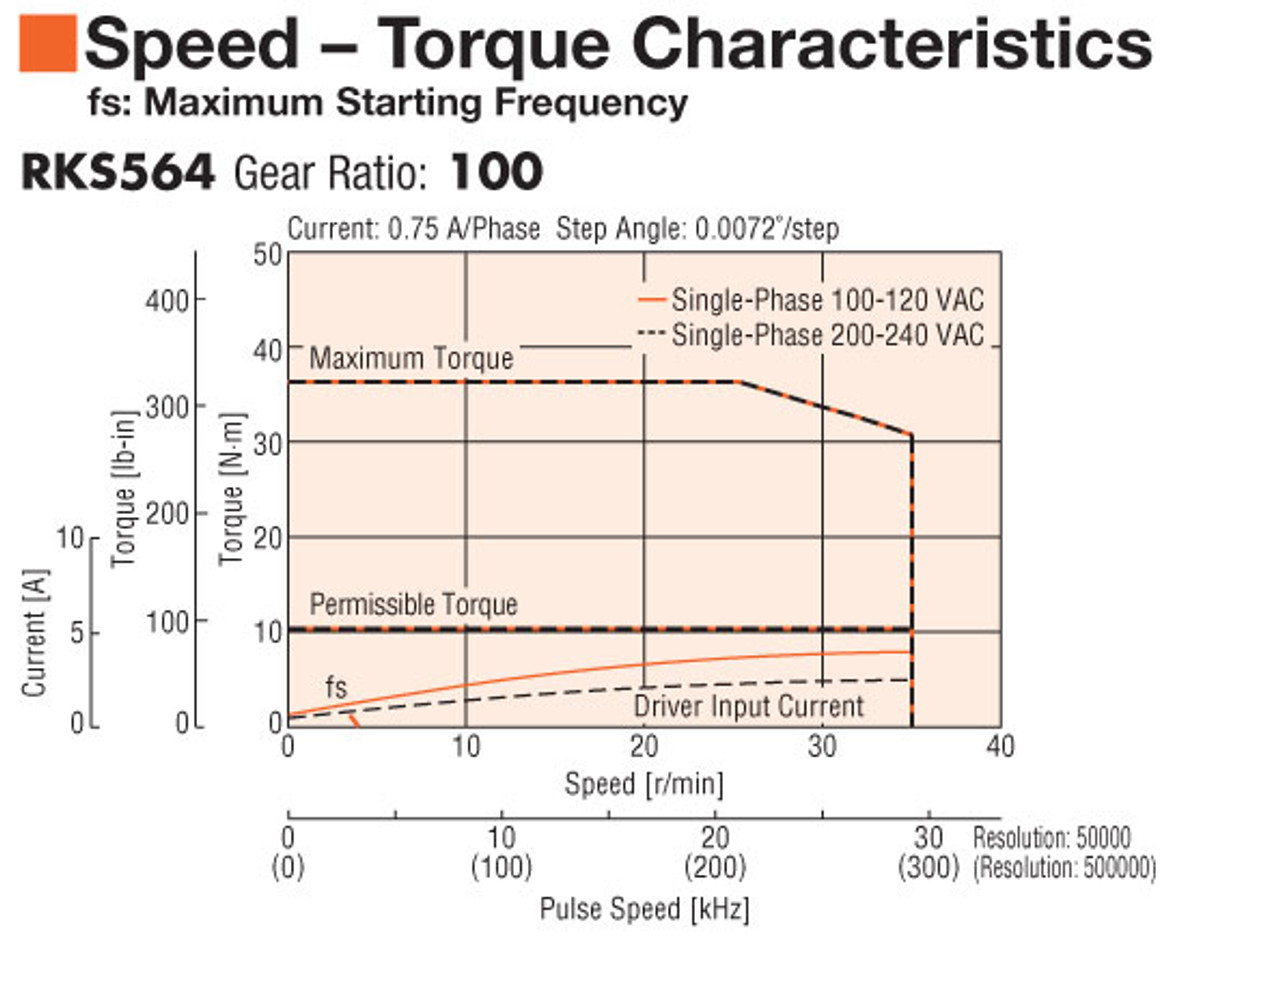 PKE564BC-HS100 - Speed-Torque